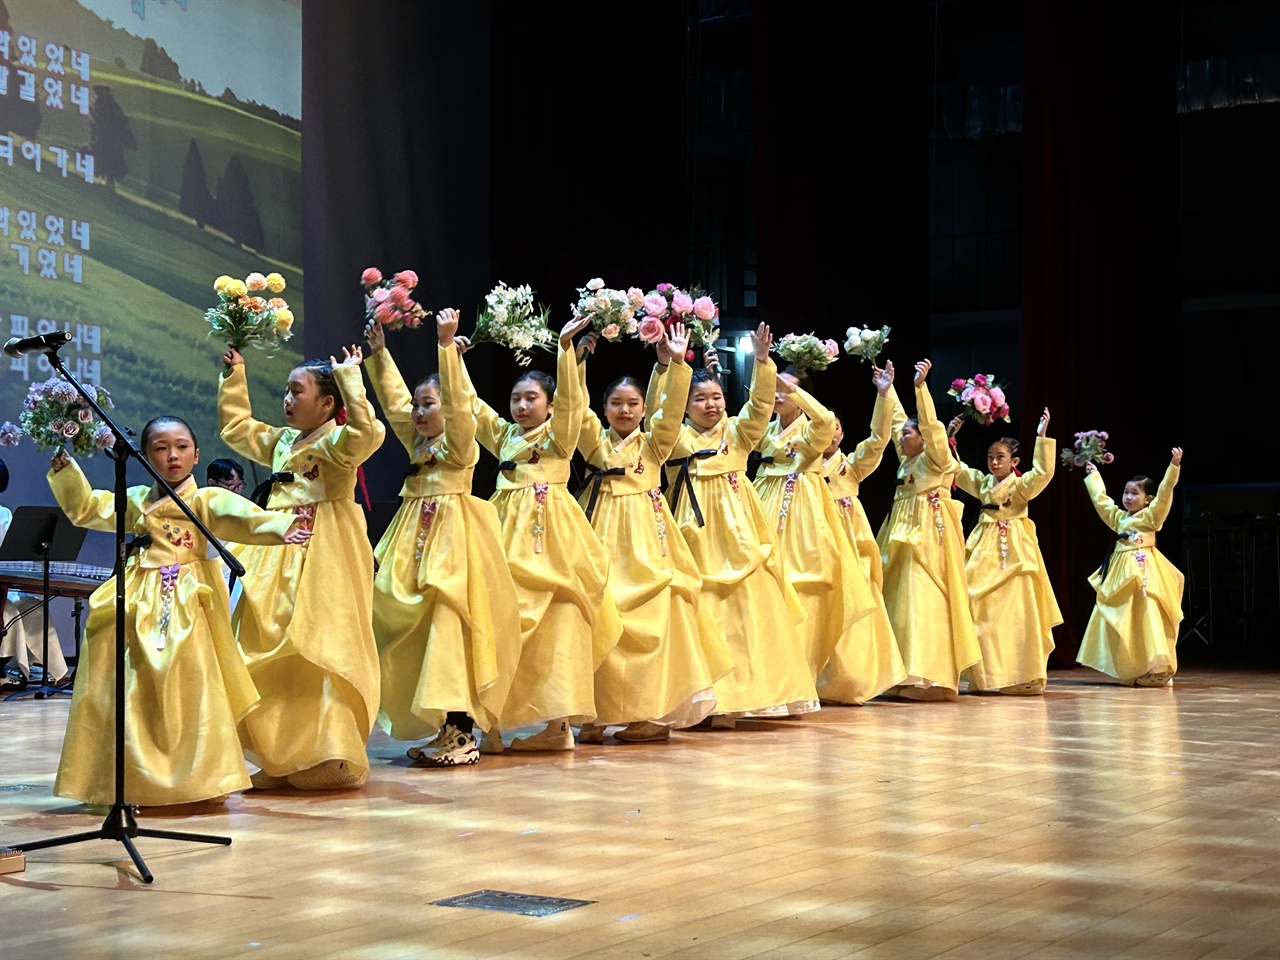 소리너울의 어린이예술단은 ‘꽃’을 초연해 관객들의 가장 큰 박수를 받았다.